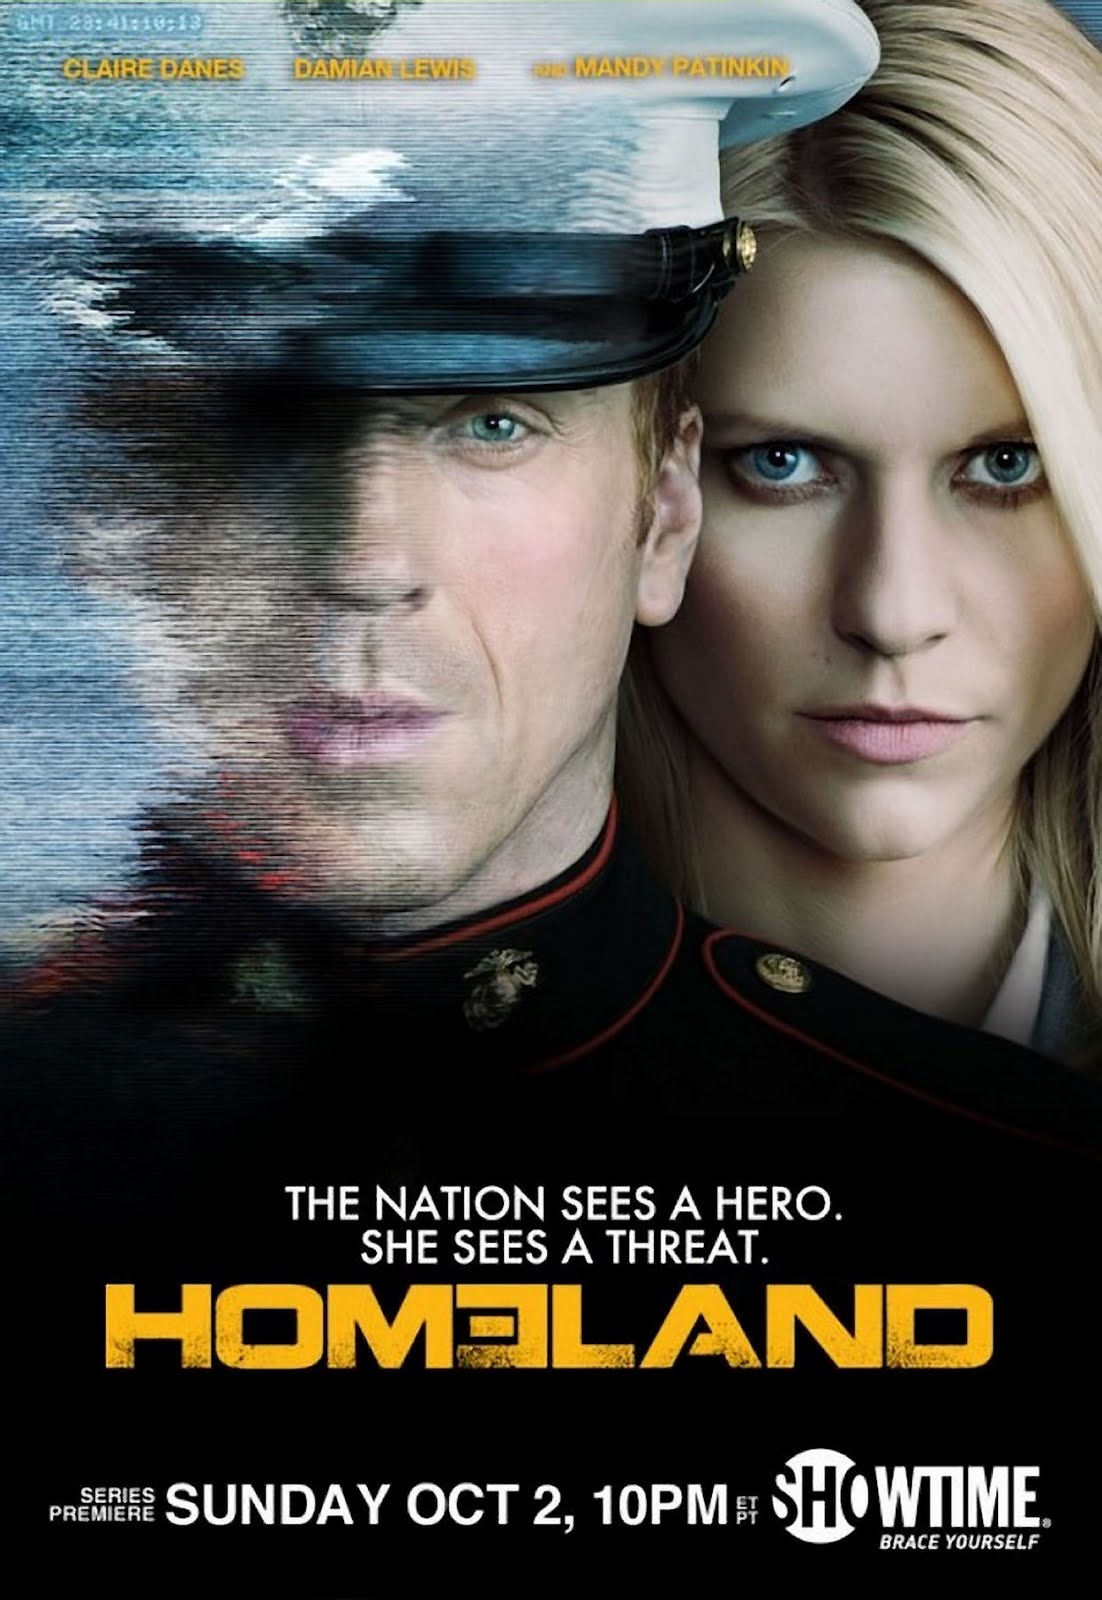 Homeland: Season 1